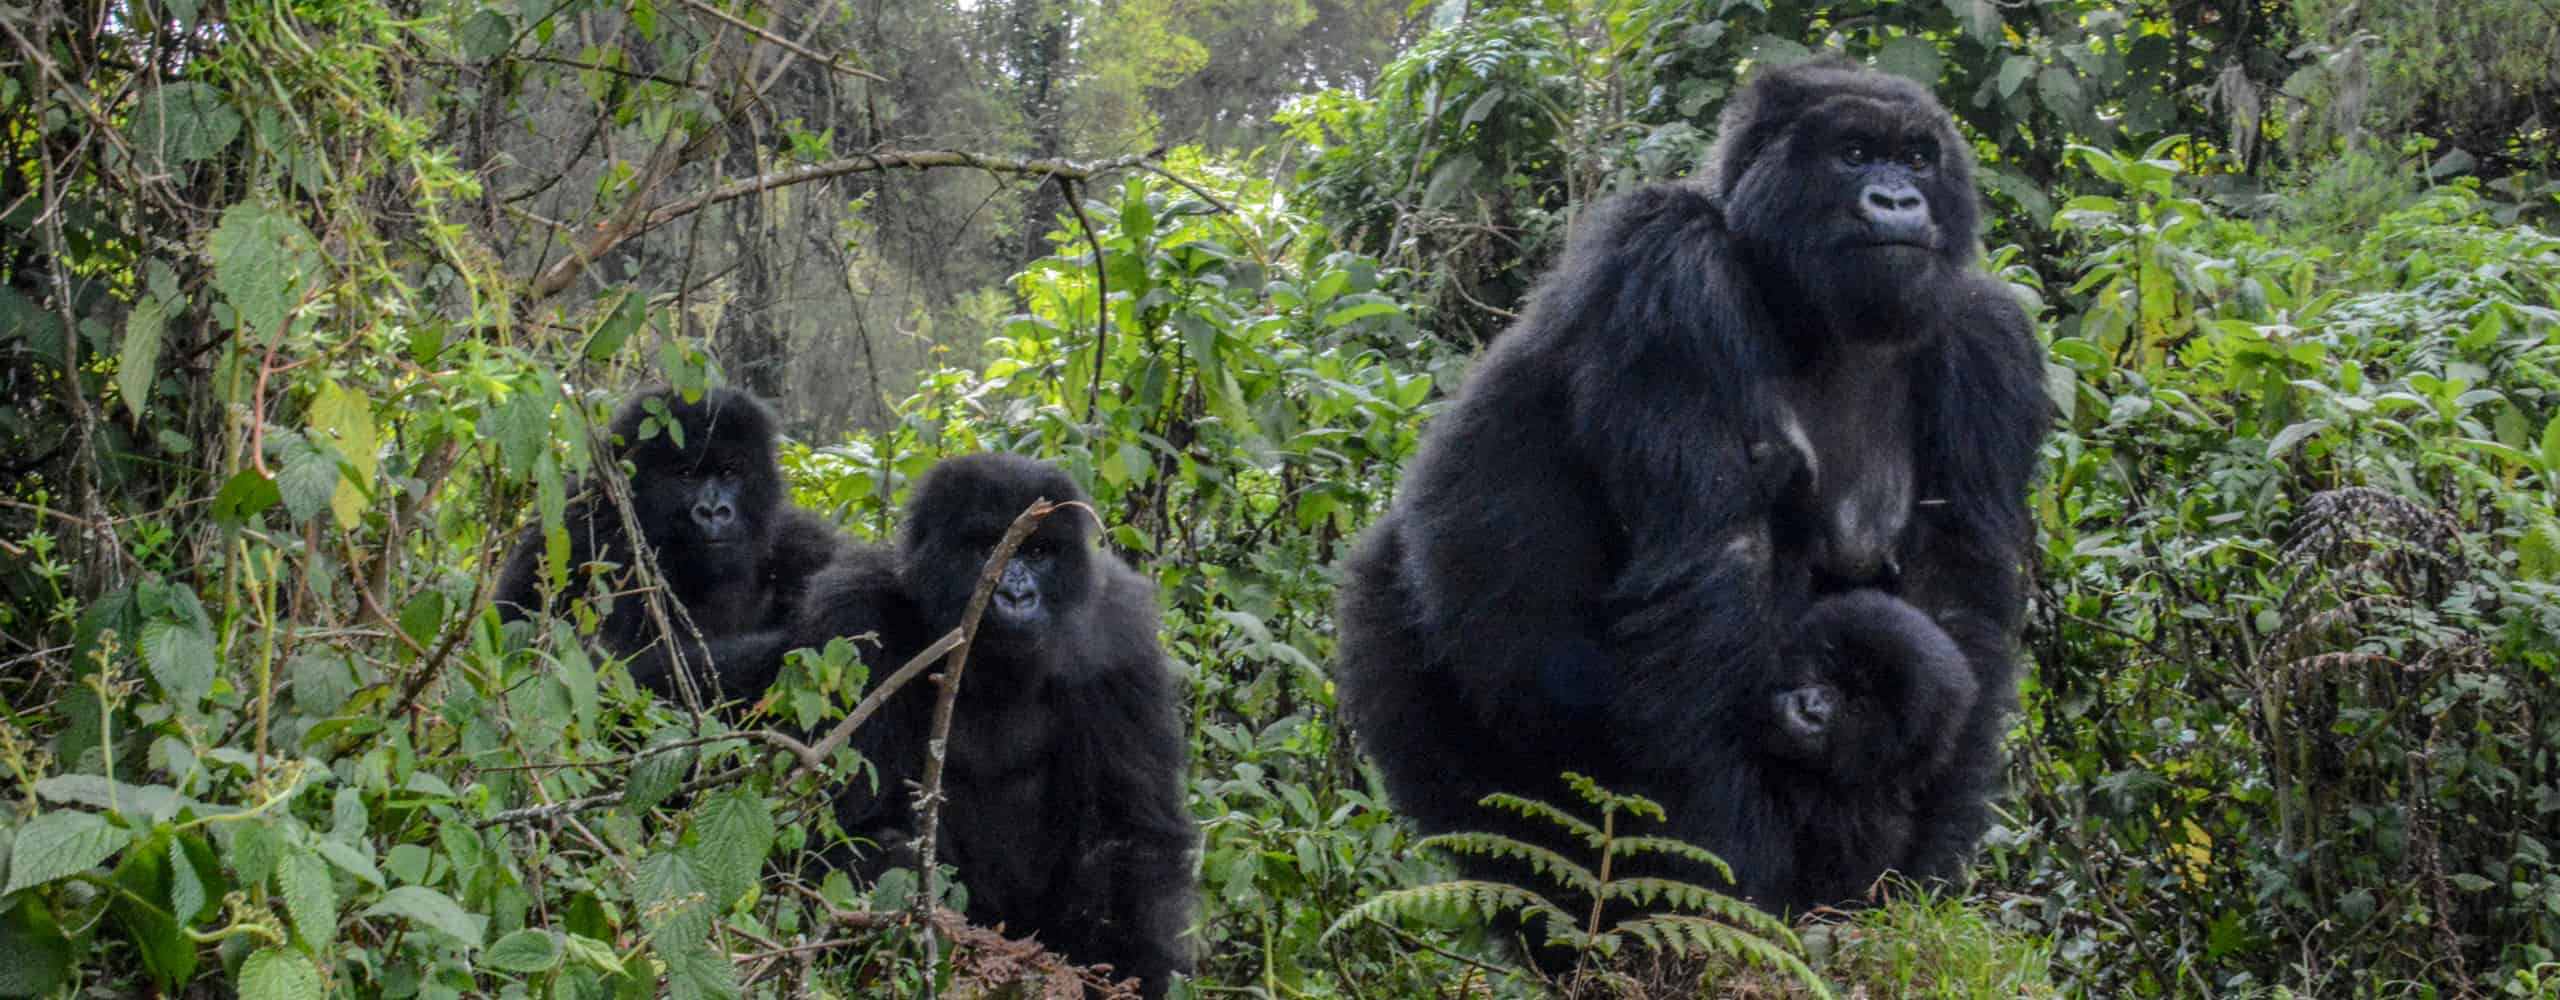 Trekking With Gorillas, Rwanda